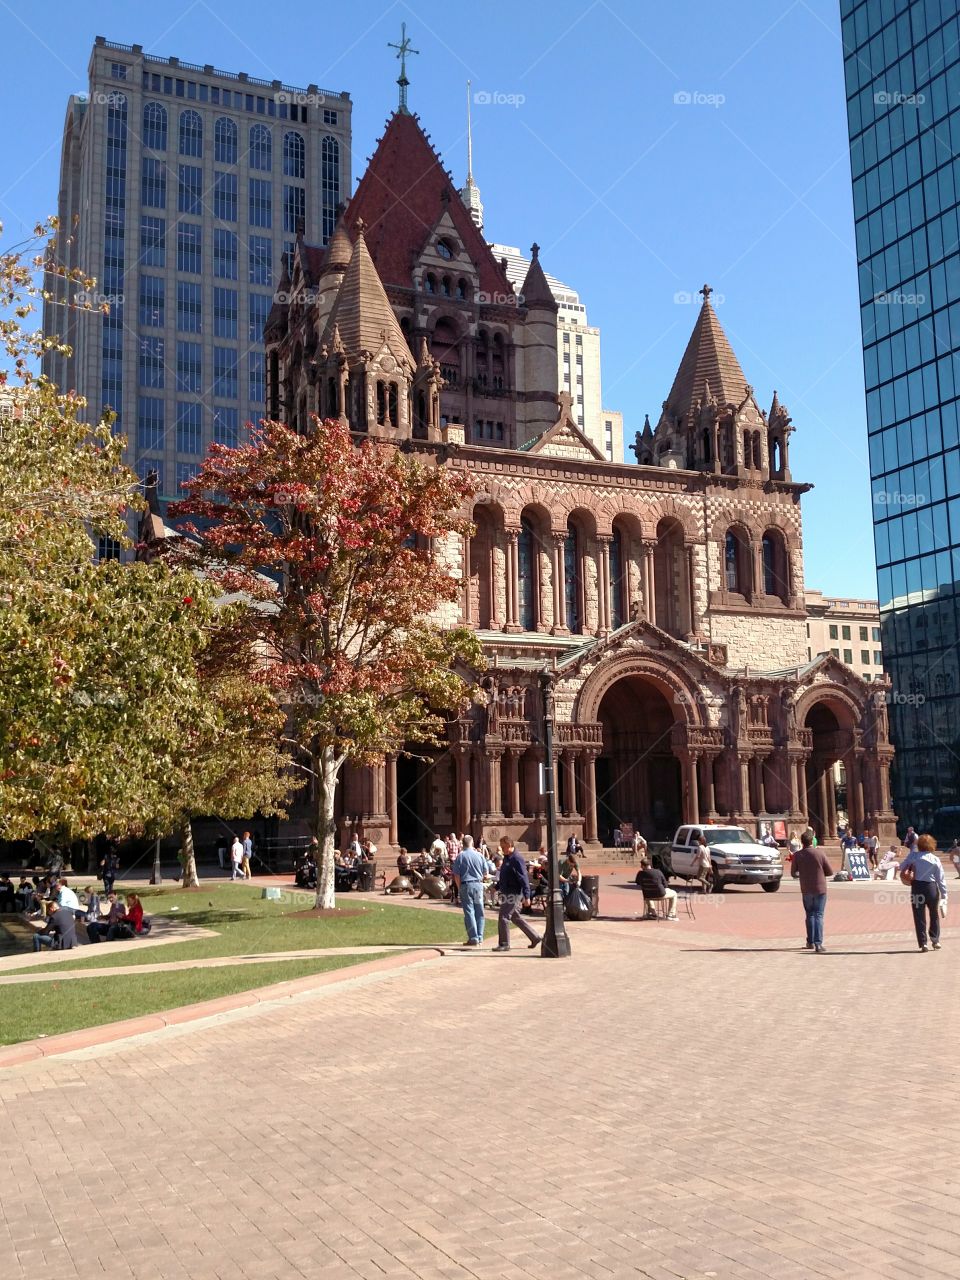 Downtown Boston Church